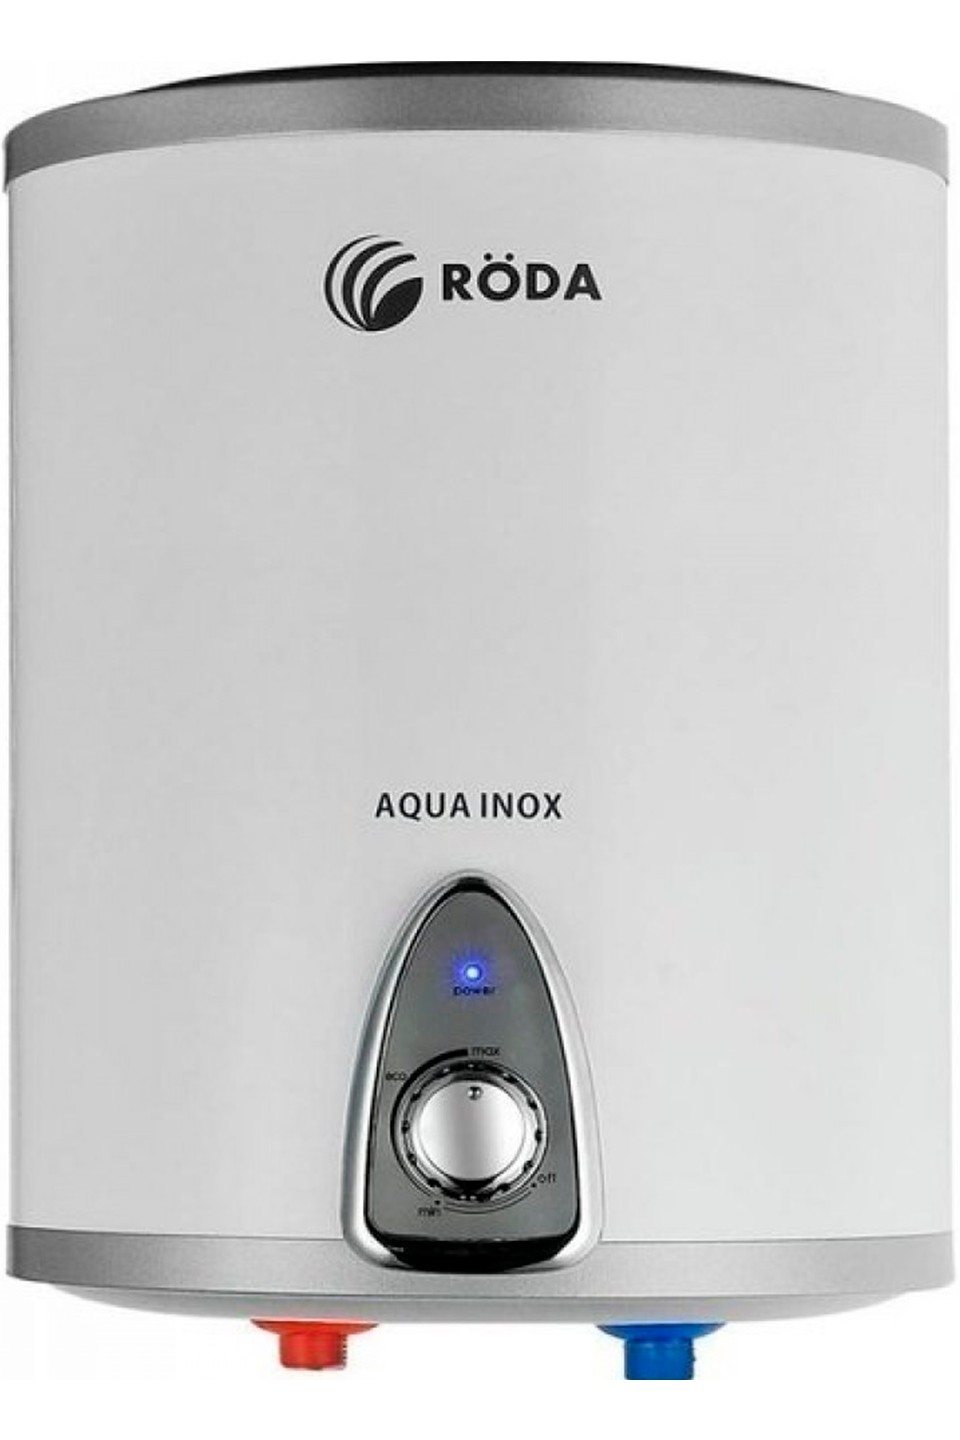 Roda Aqua Inox 10 V